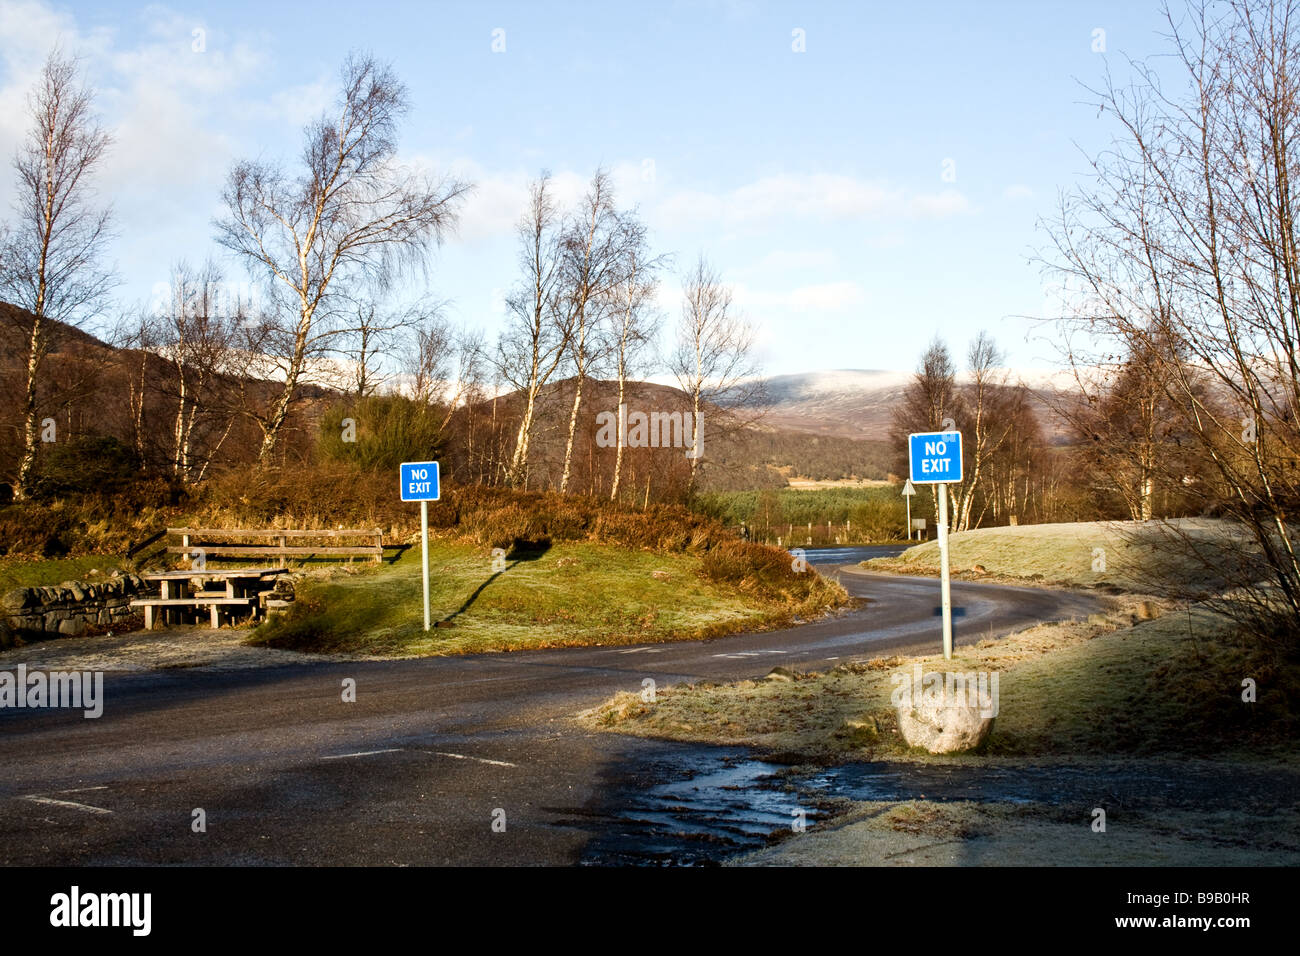 Dos azul 'No Exit' firmar sobre una carretera de hielo en el invierno en Escocia Foto de stock